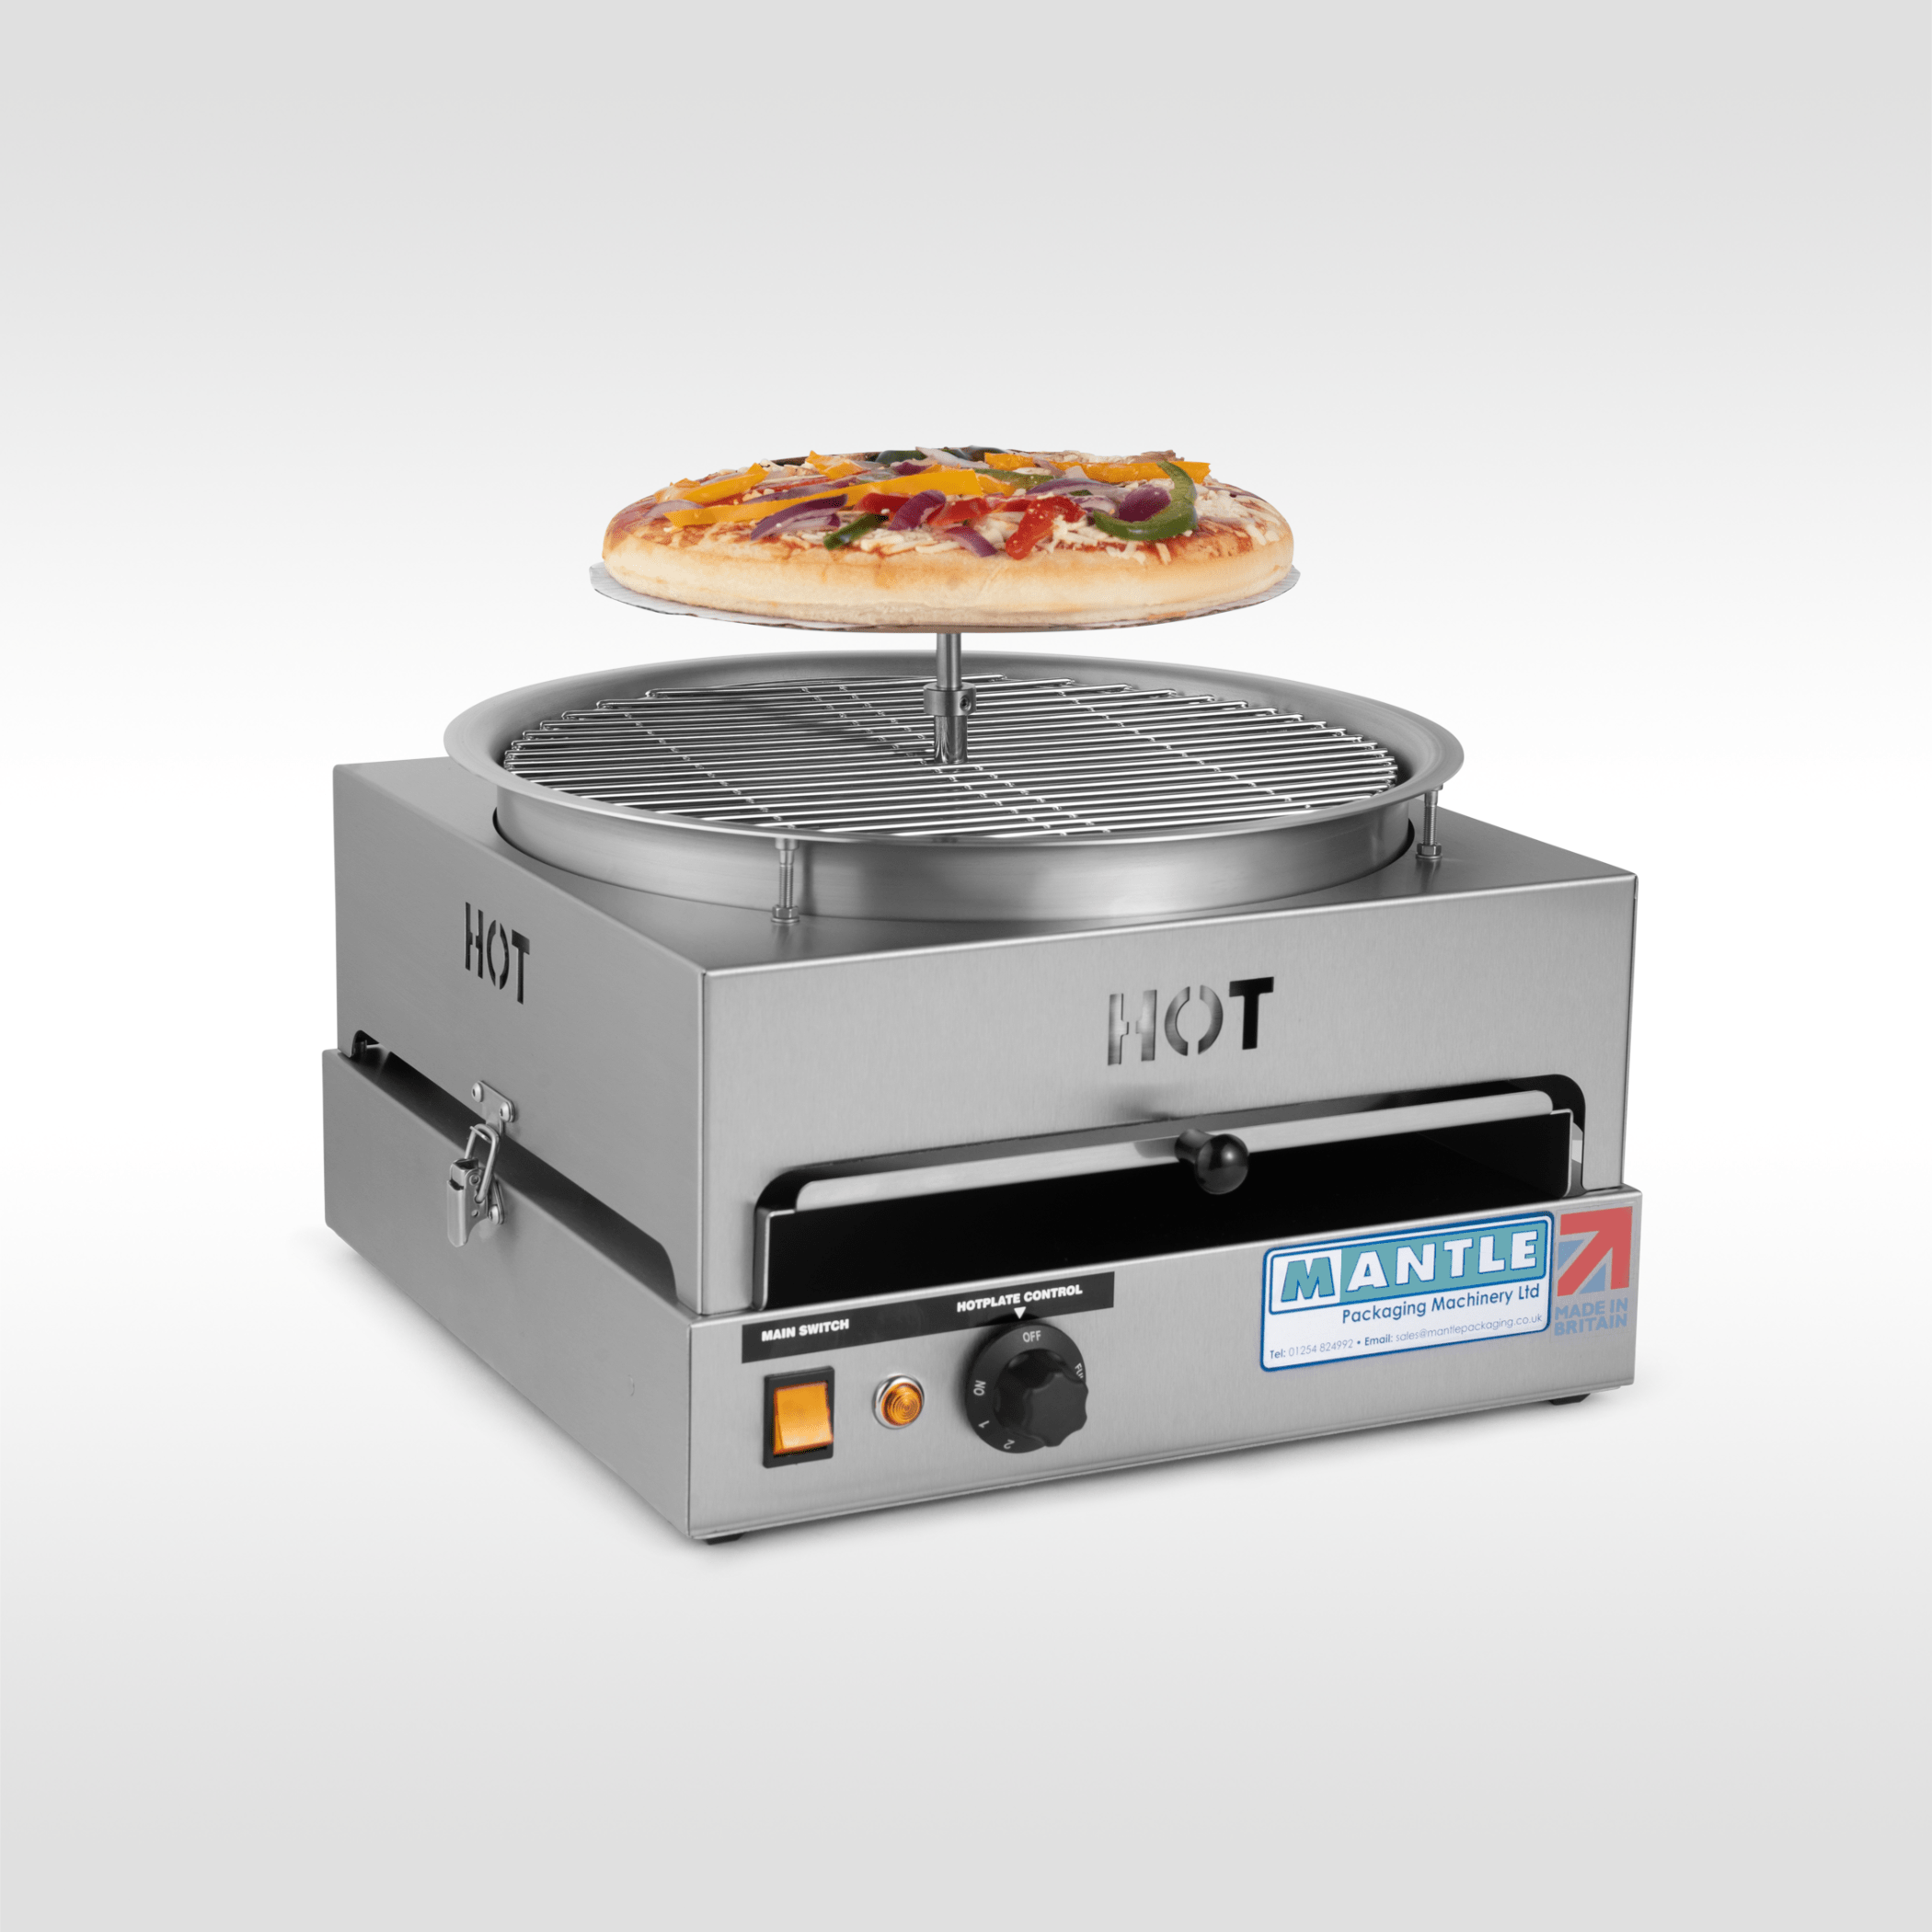 Machines d’emballage alimentaire: Parfait pour l’emballage de pizzas fraîches sur des disques de carton, cet emballage à pizza simple à utiliser en acier inoxydable dispose de deux loquets à dégagement rapide afin qu’il puisse être 